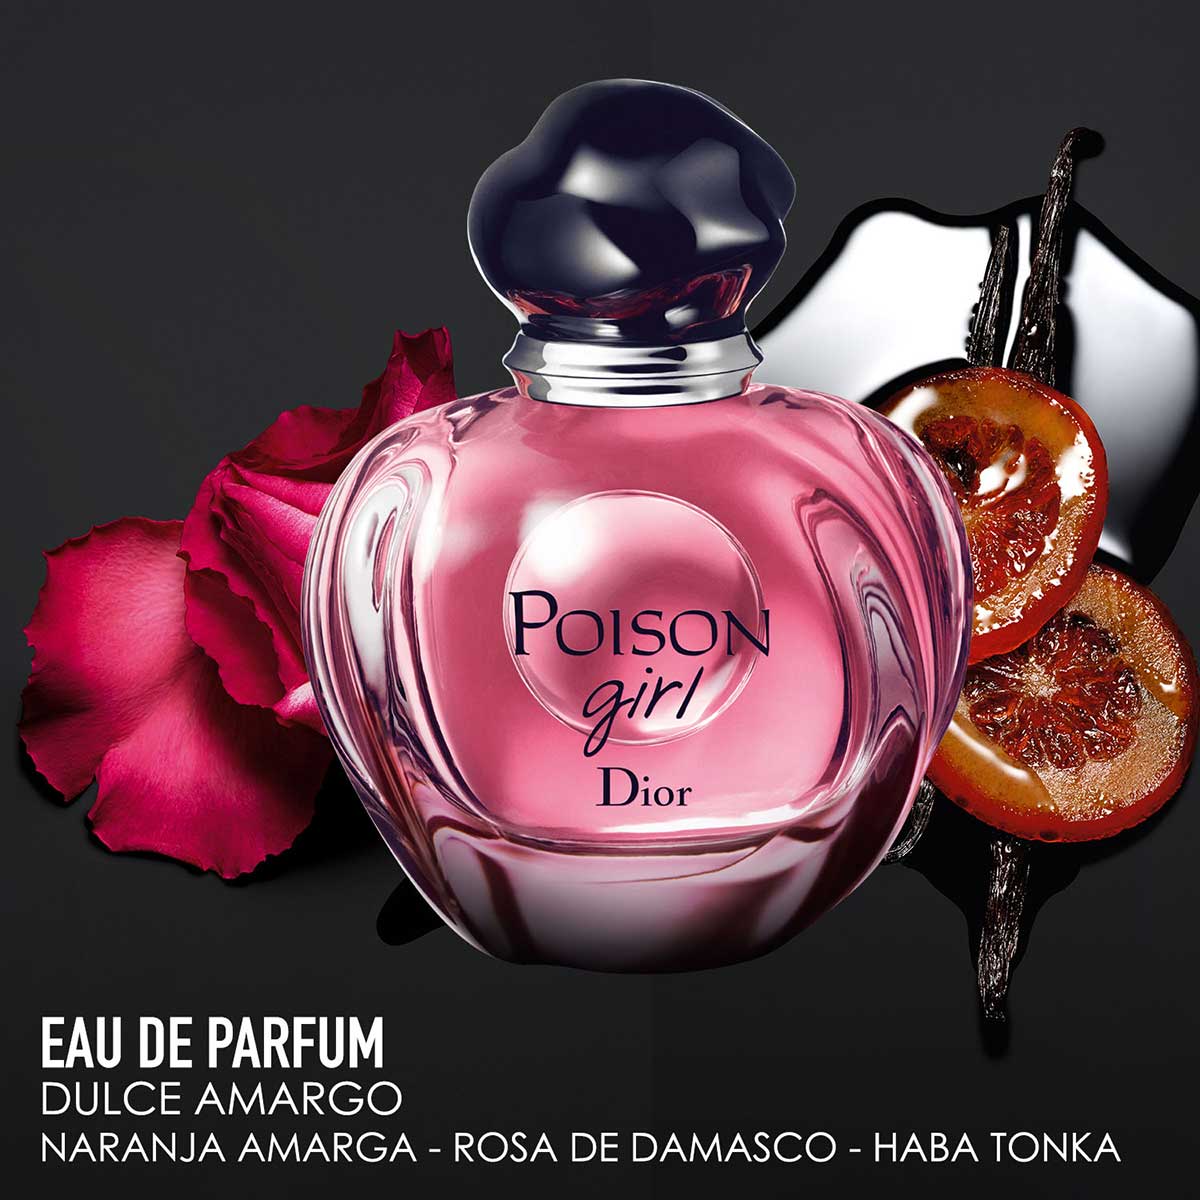 DIOR Poison Girl Eau De Parfum